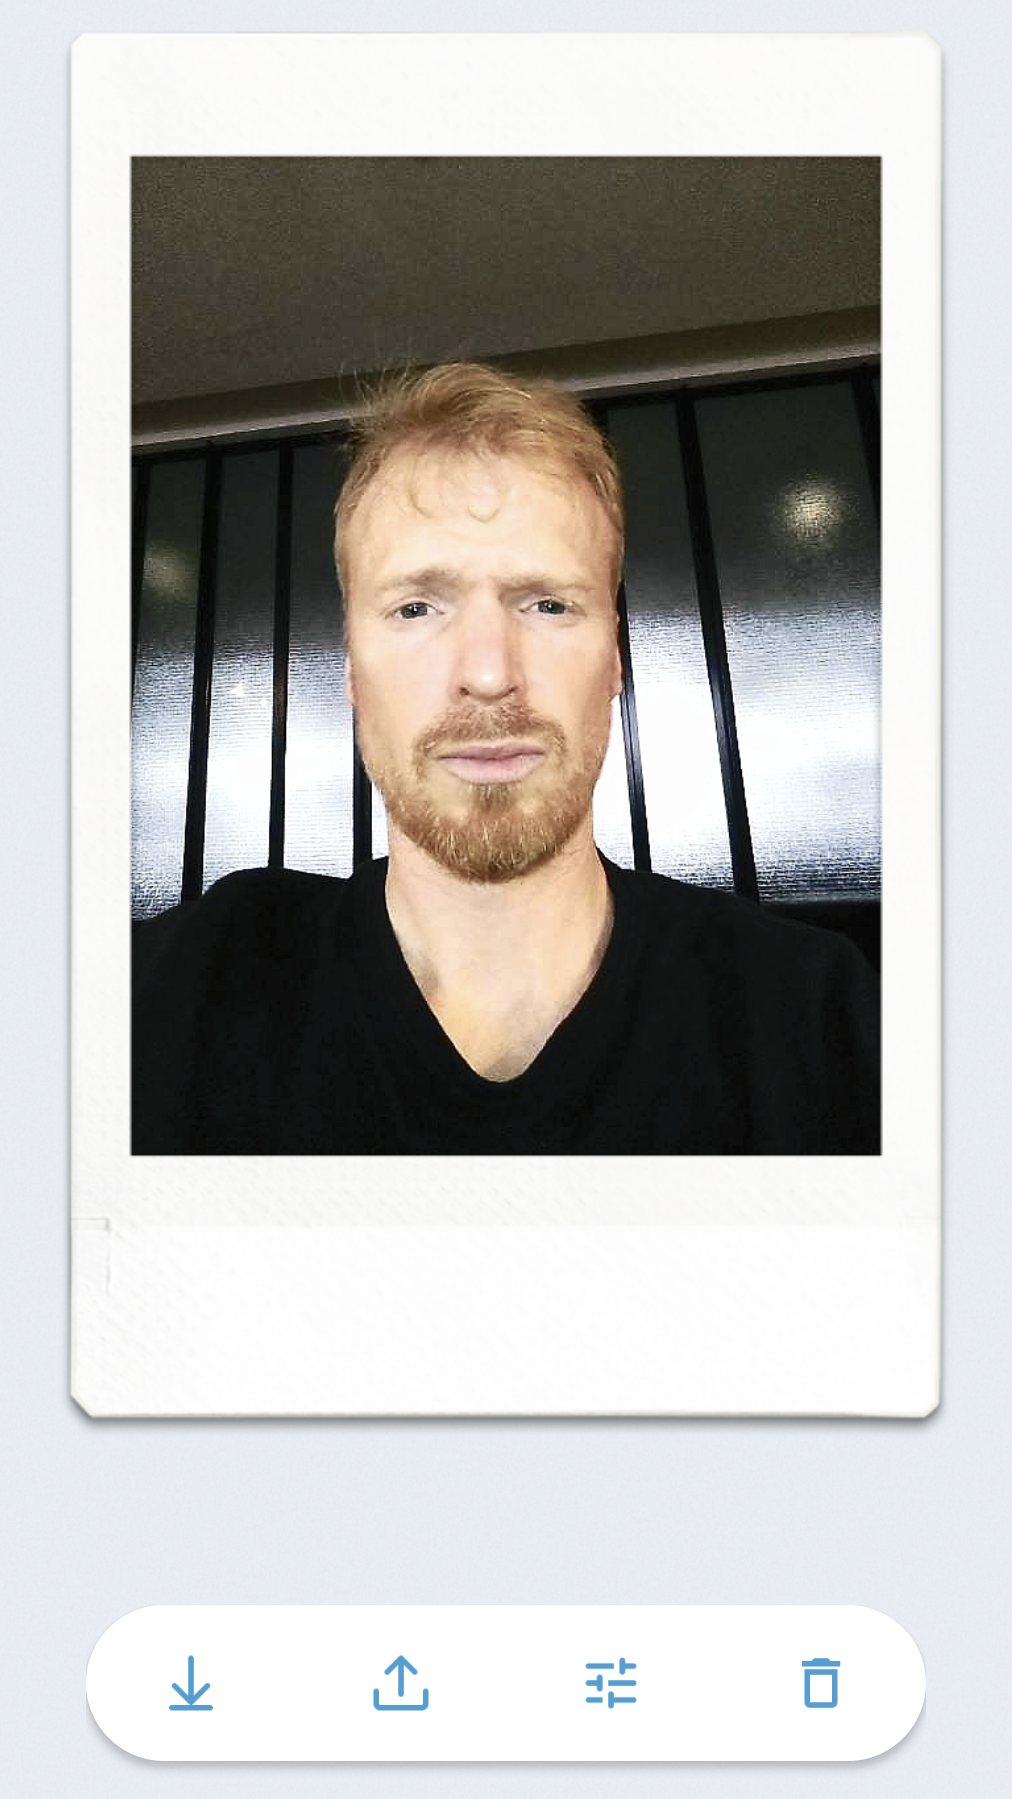 Fujifilm Instax Pall app screenshot of self portrait